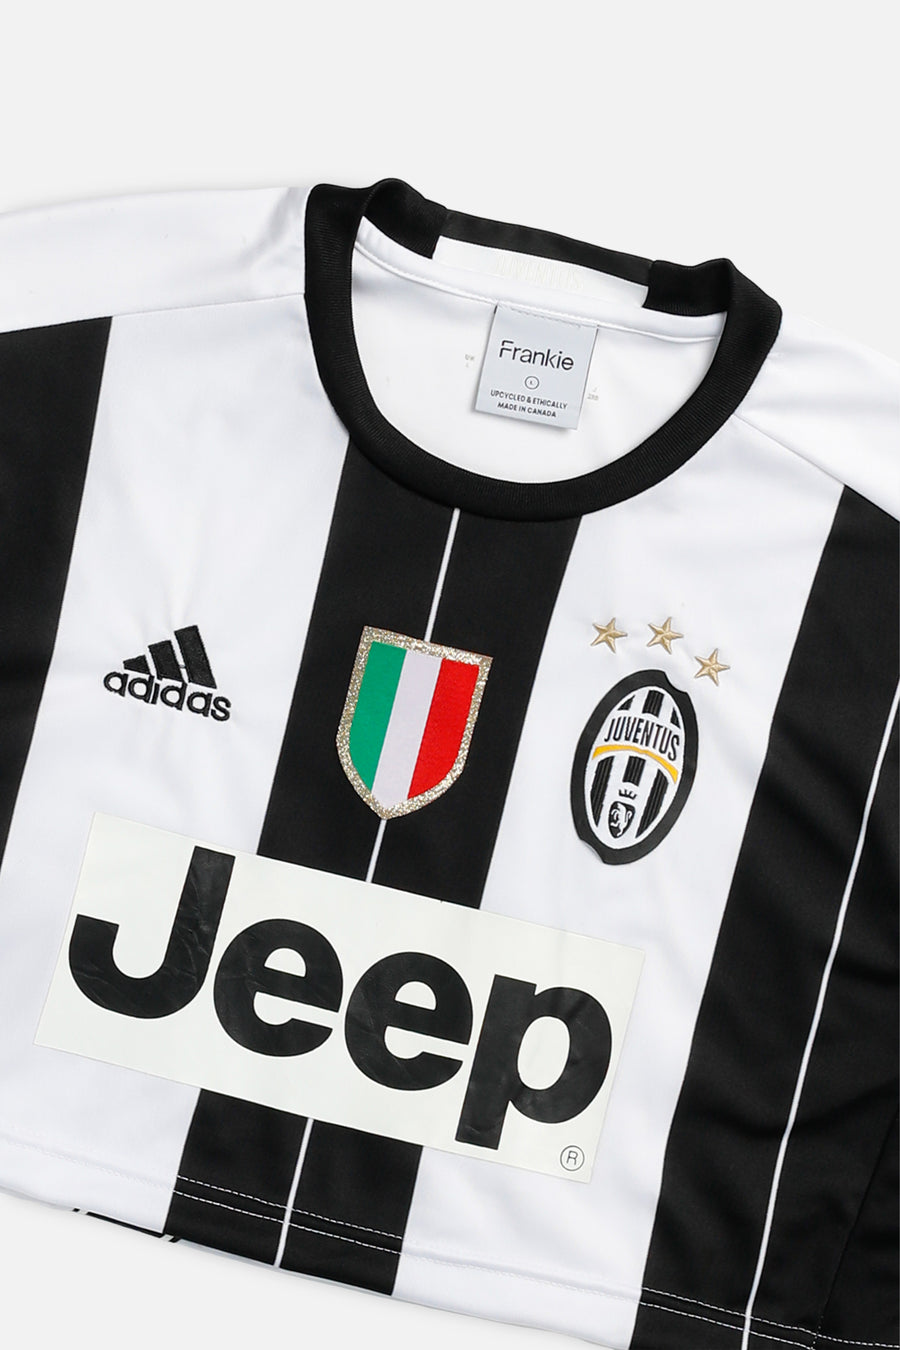 Rework Crop Juventus Soccer Jersey - L